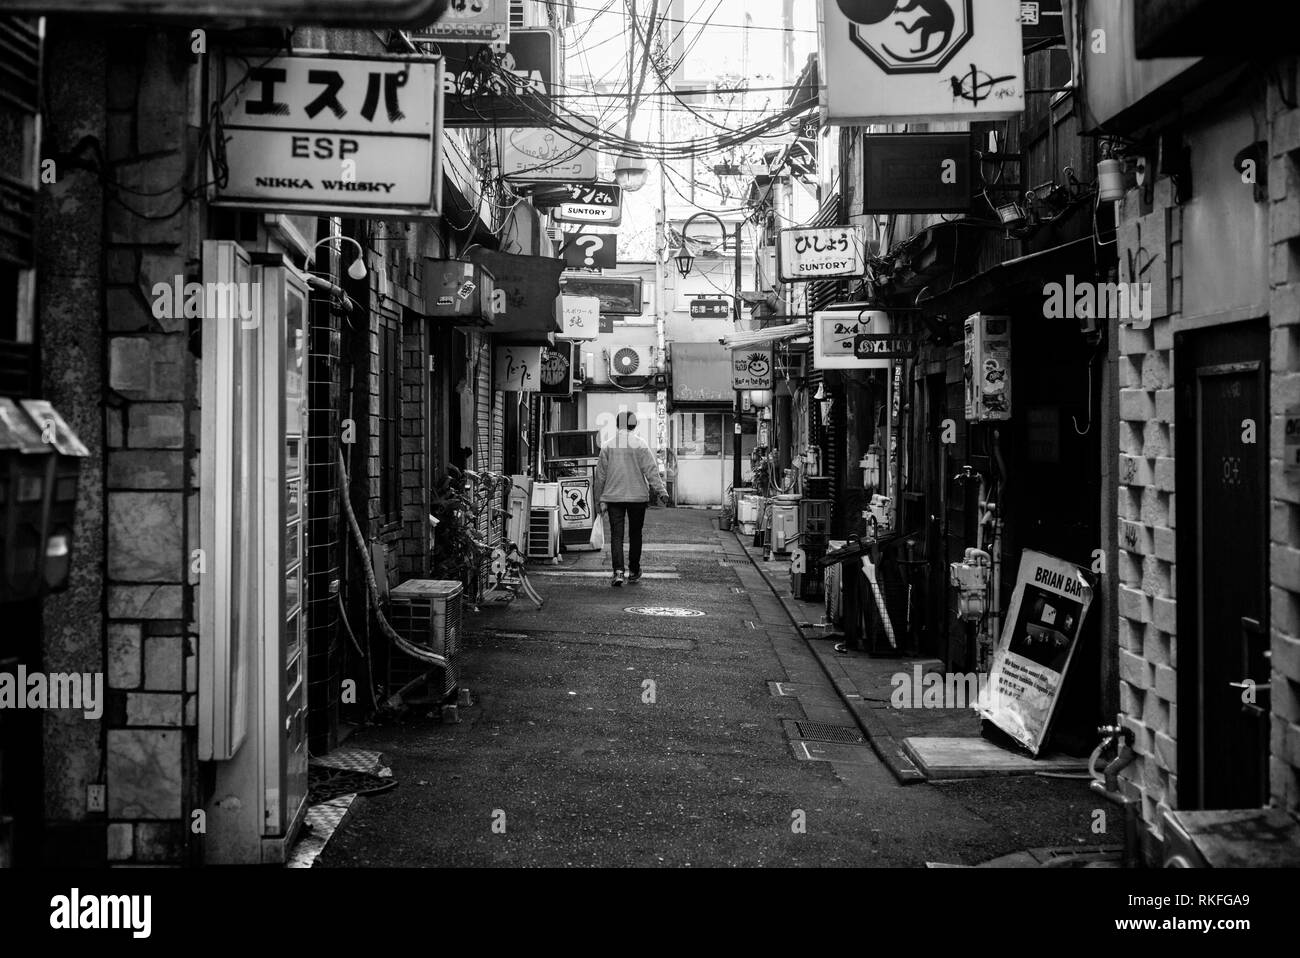 Bars in Shinjuku Golden Gai Bar district, Tokio, Japan Stockfoto